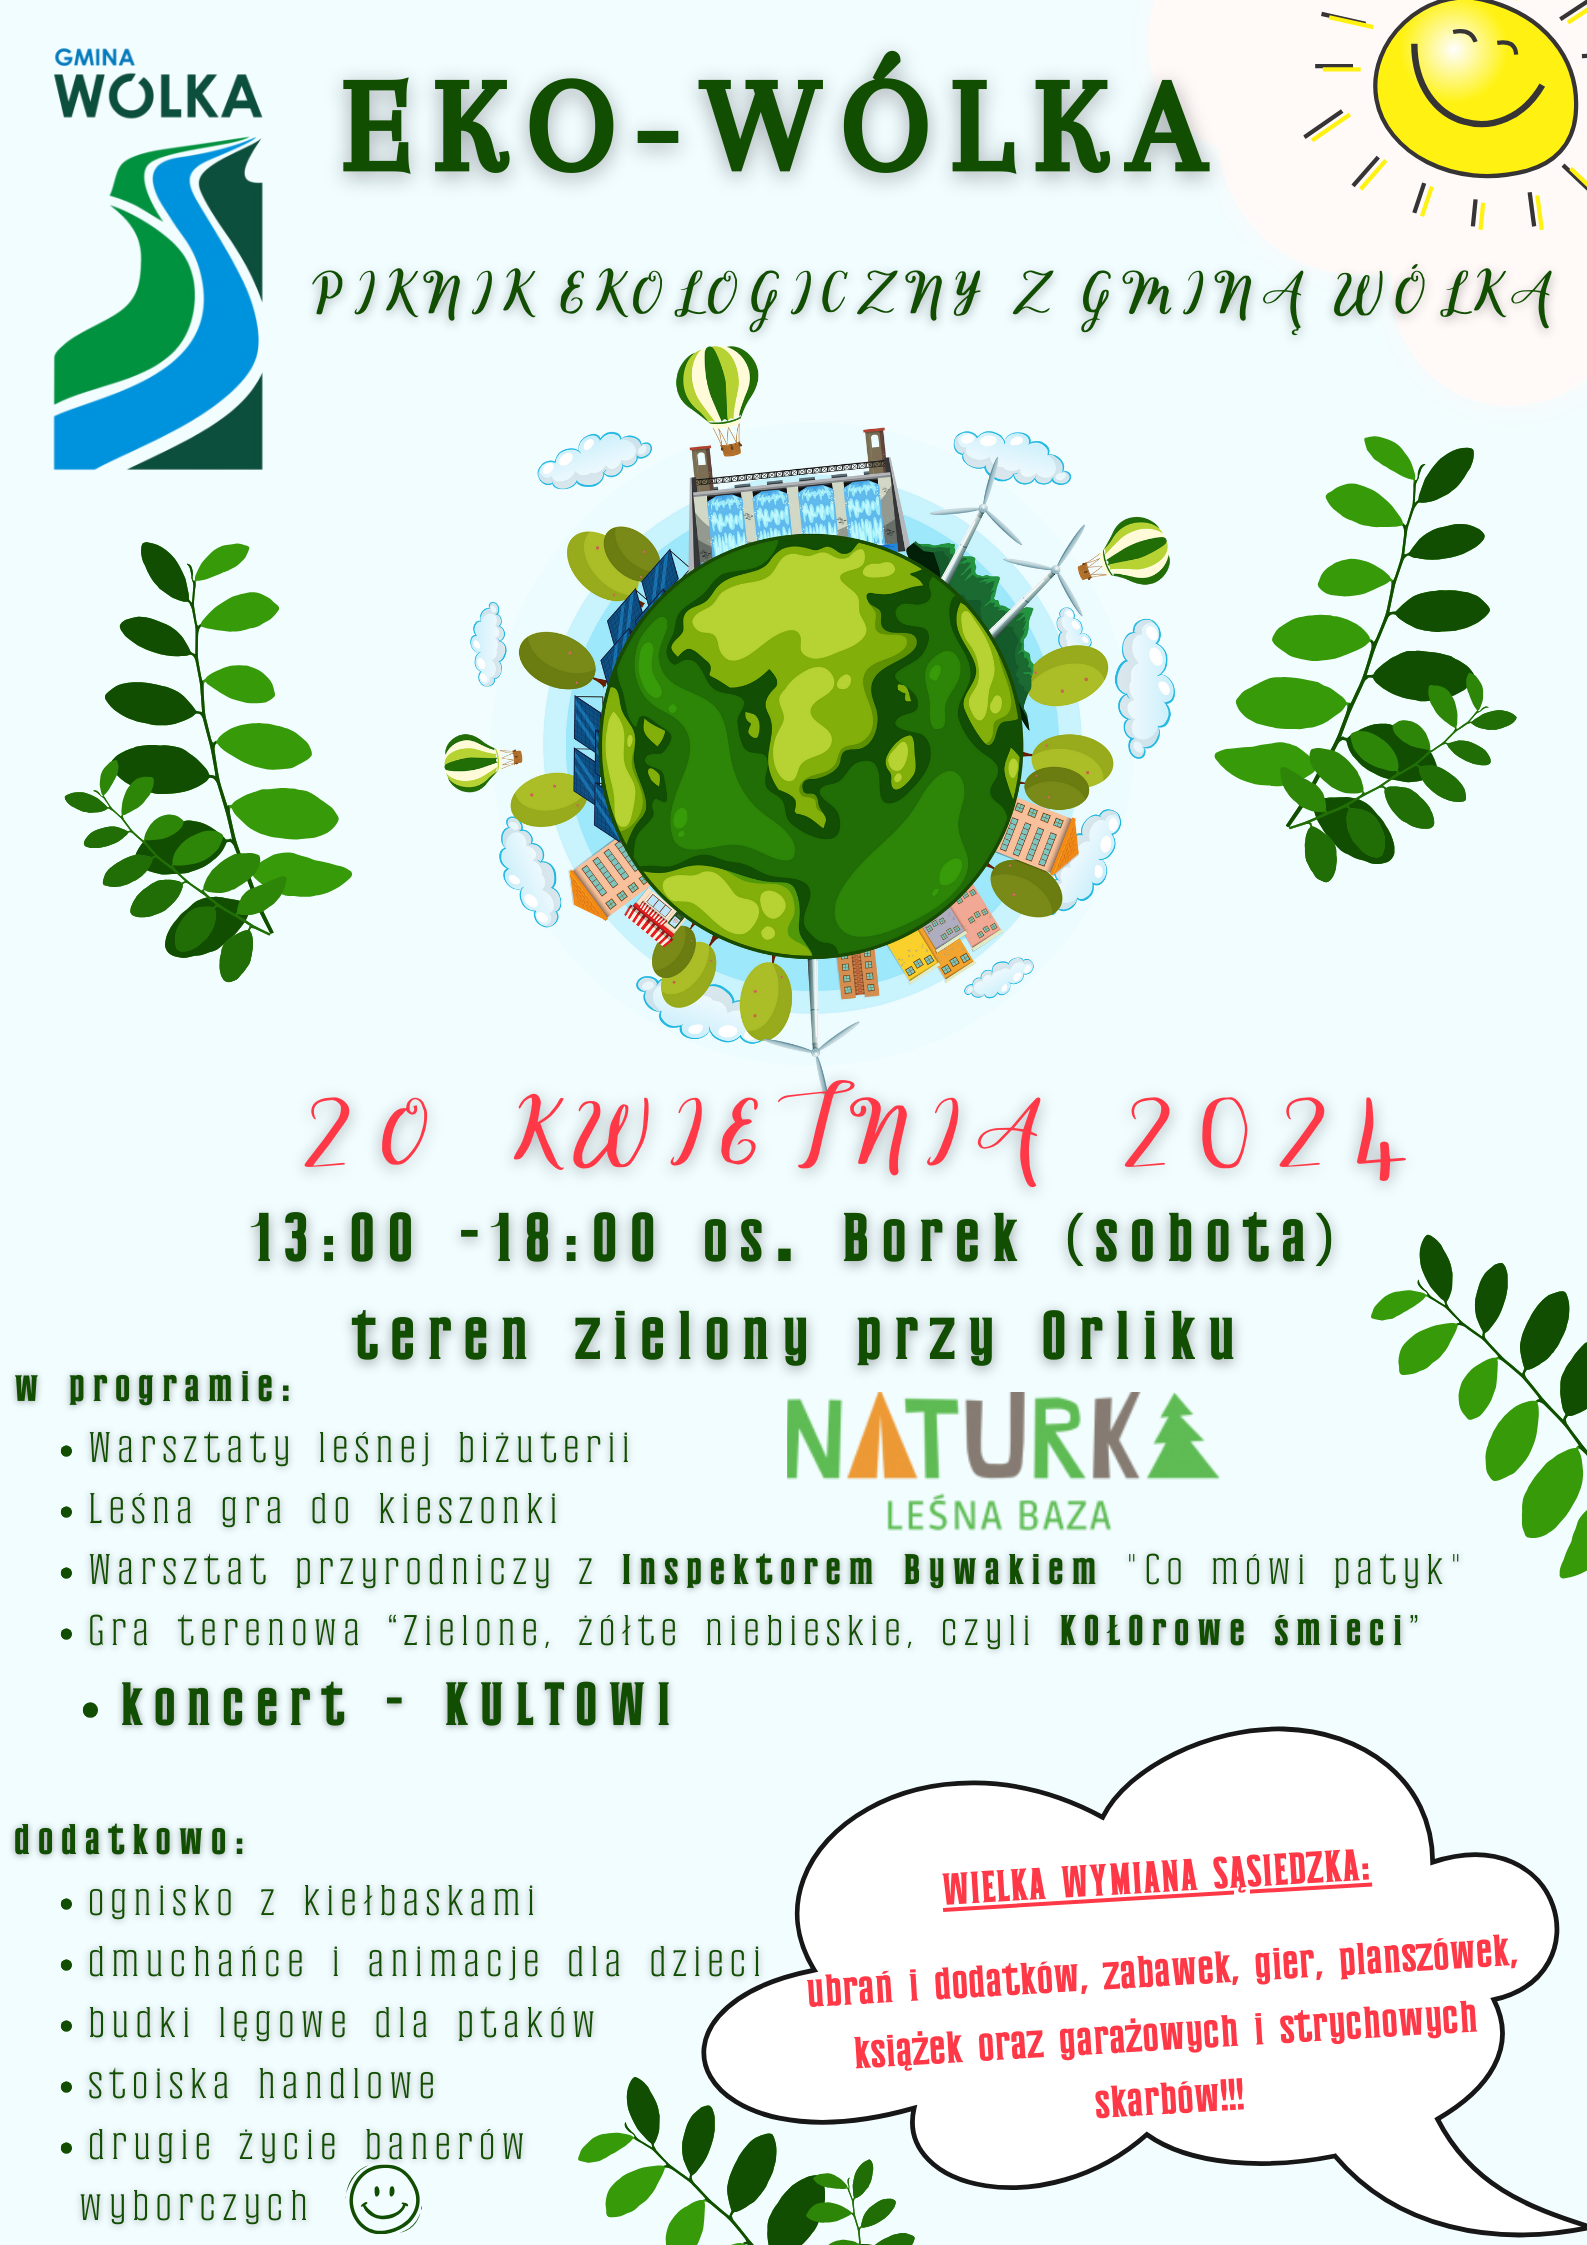 Plakat wydarzenia "Gra Wólka ekologiczna" z grafiką Ziemi, roślin i napisami informującymi o grze terenowej, zajęciach i konkursach z nagrodami.